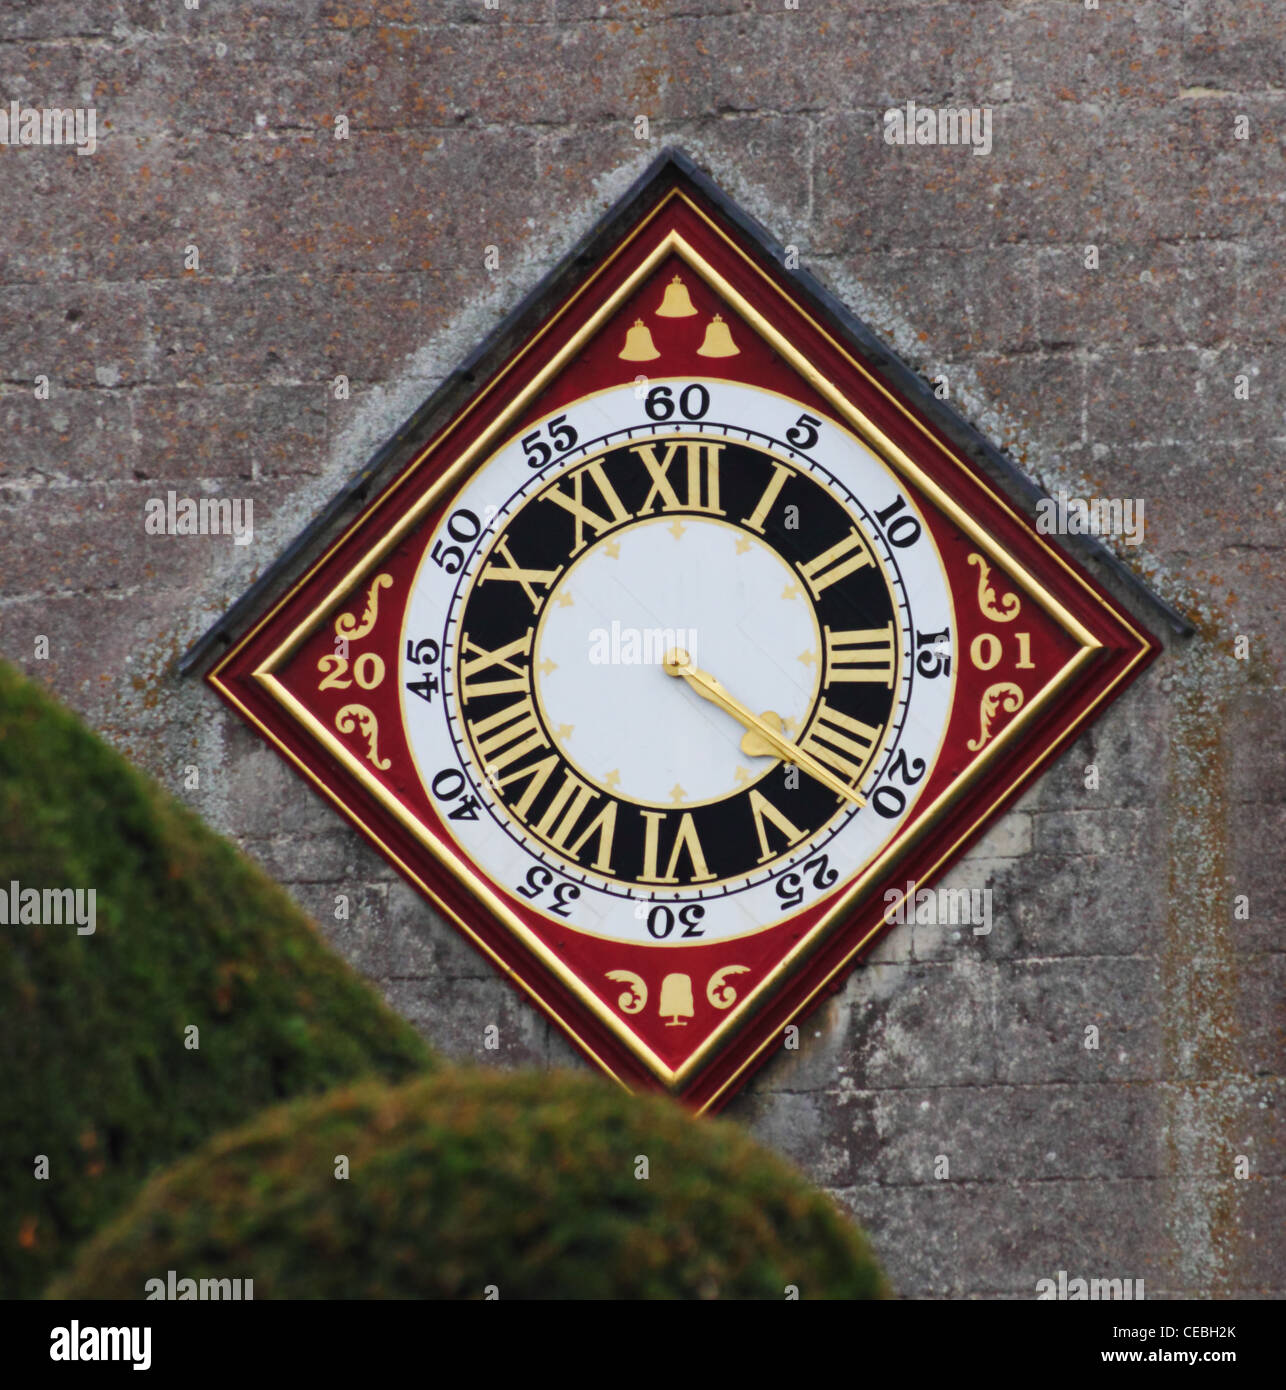 L'horloge de l'église, St Mary's, Painswick, Gloucestershire. Restauré en 2001, avec l'arbre emblématique de l'If. Banque D'Images